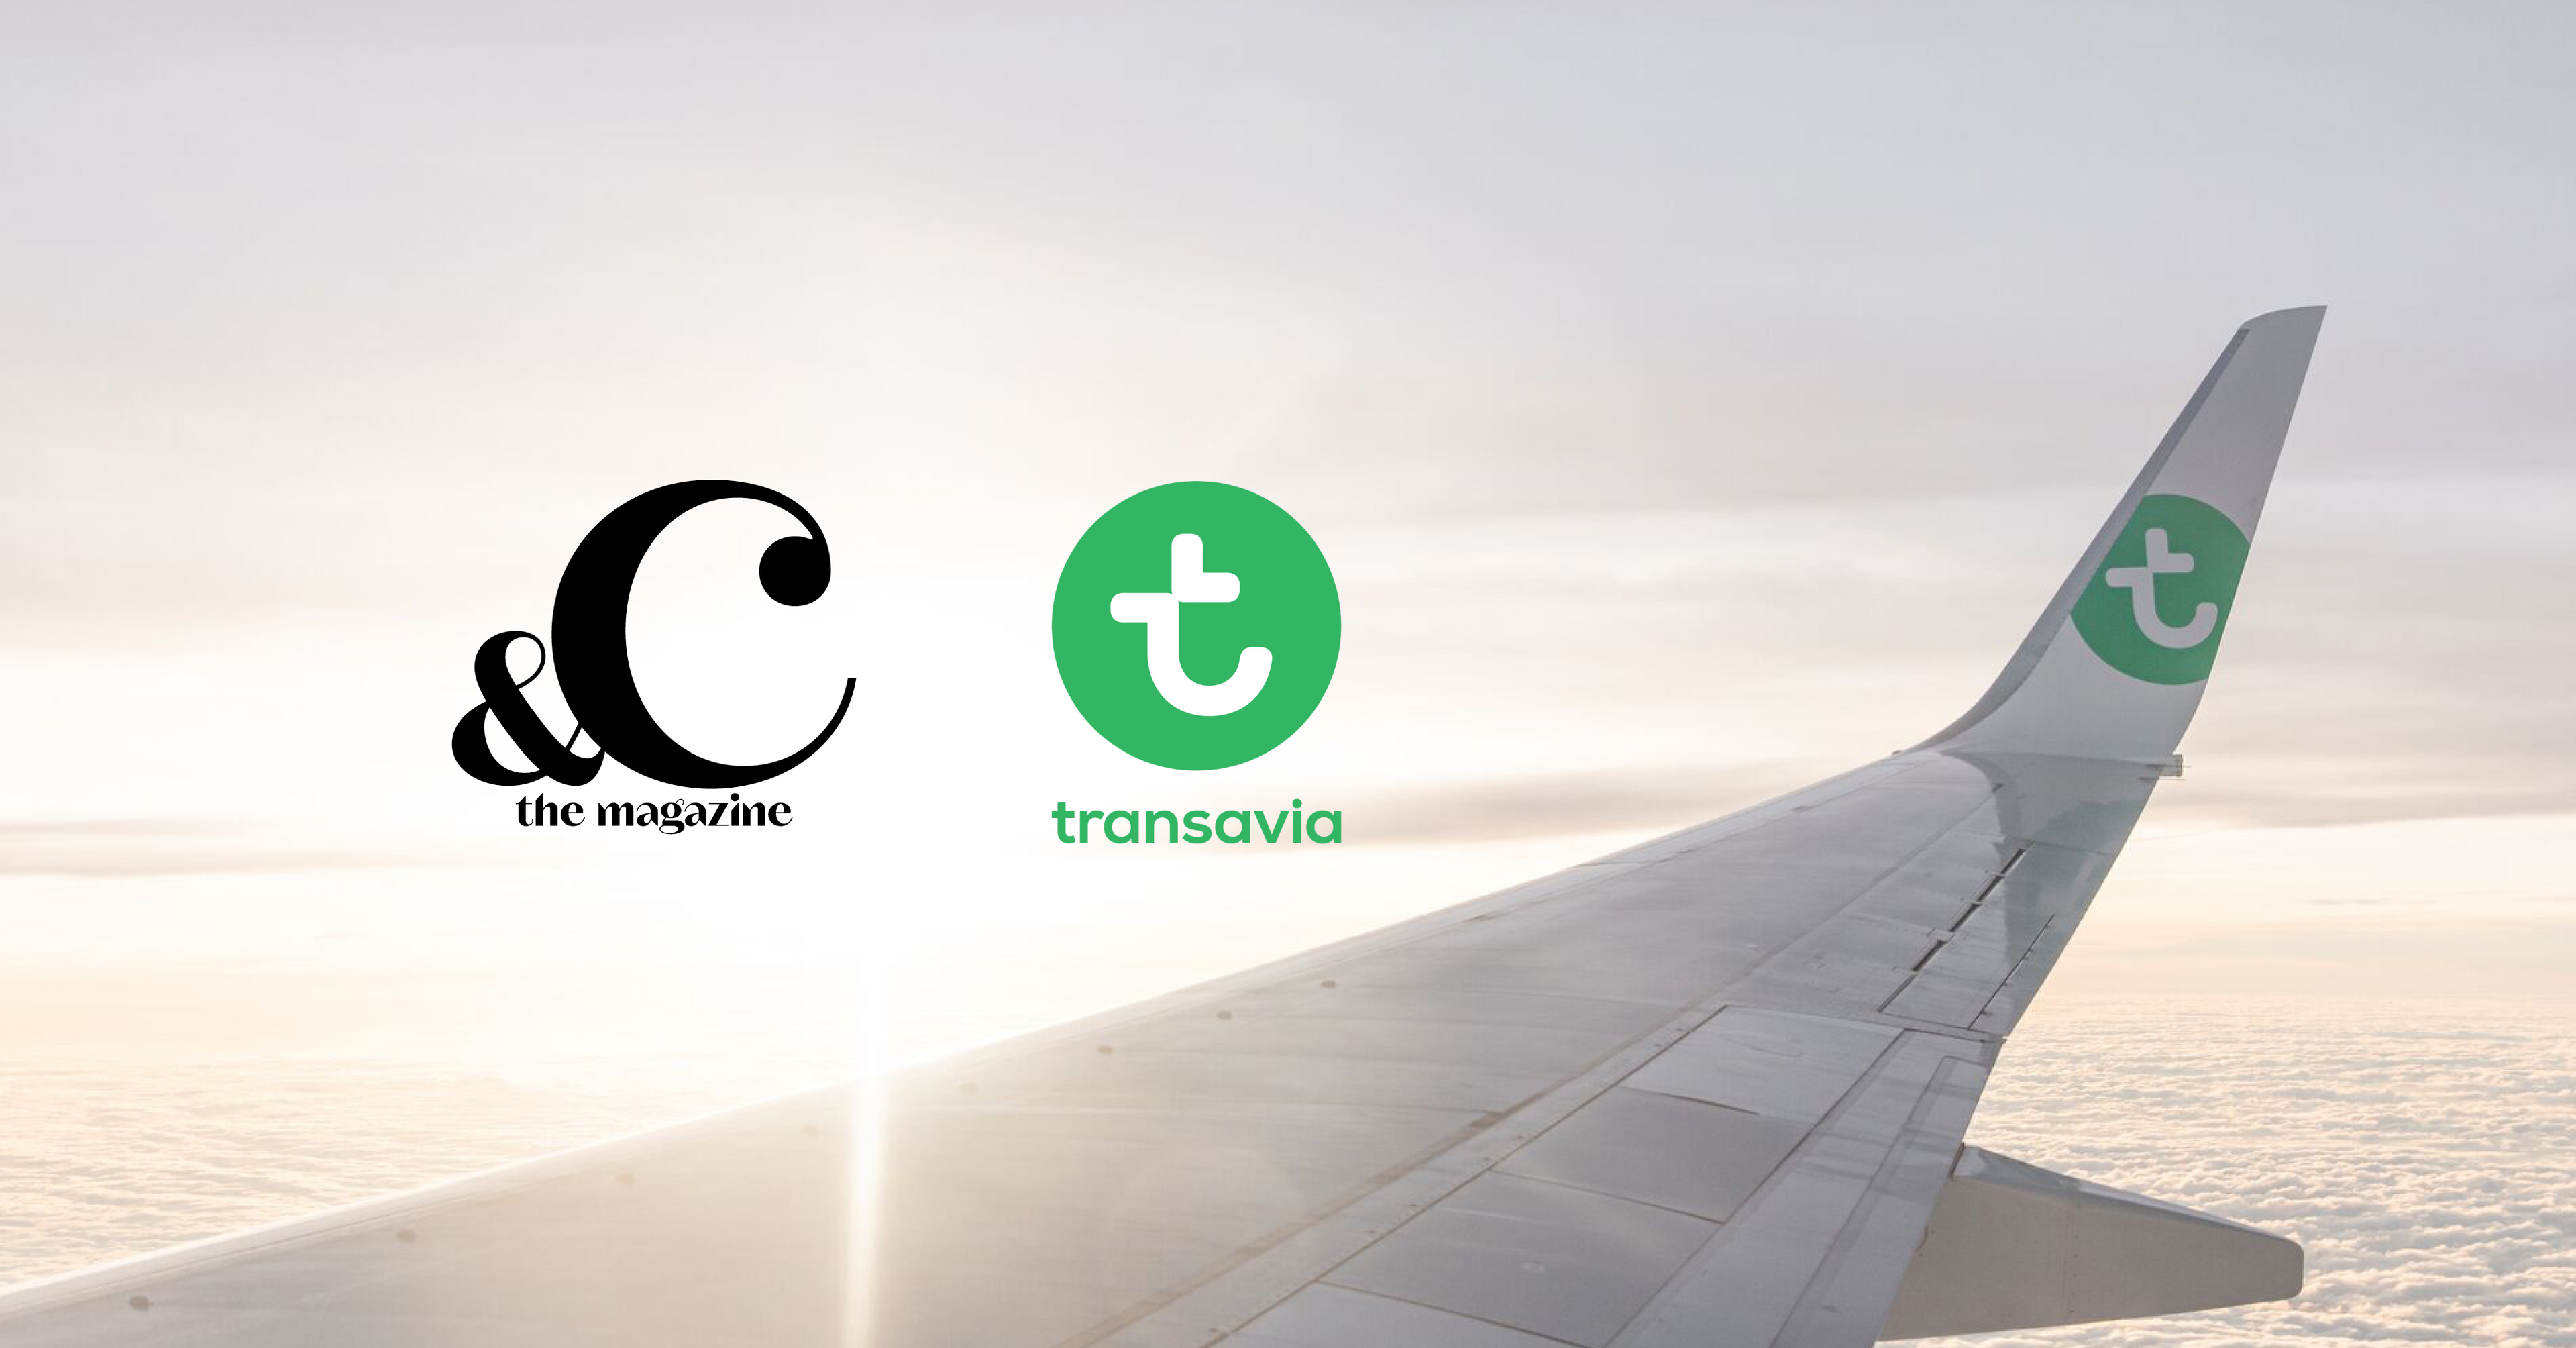 Transavia inflight magazine 'Enjoy' naar &C Media B.V.